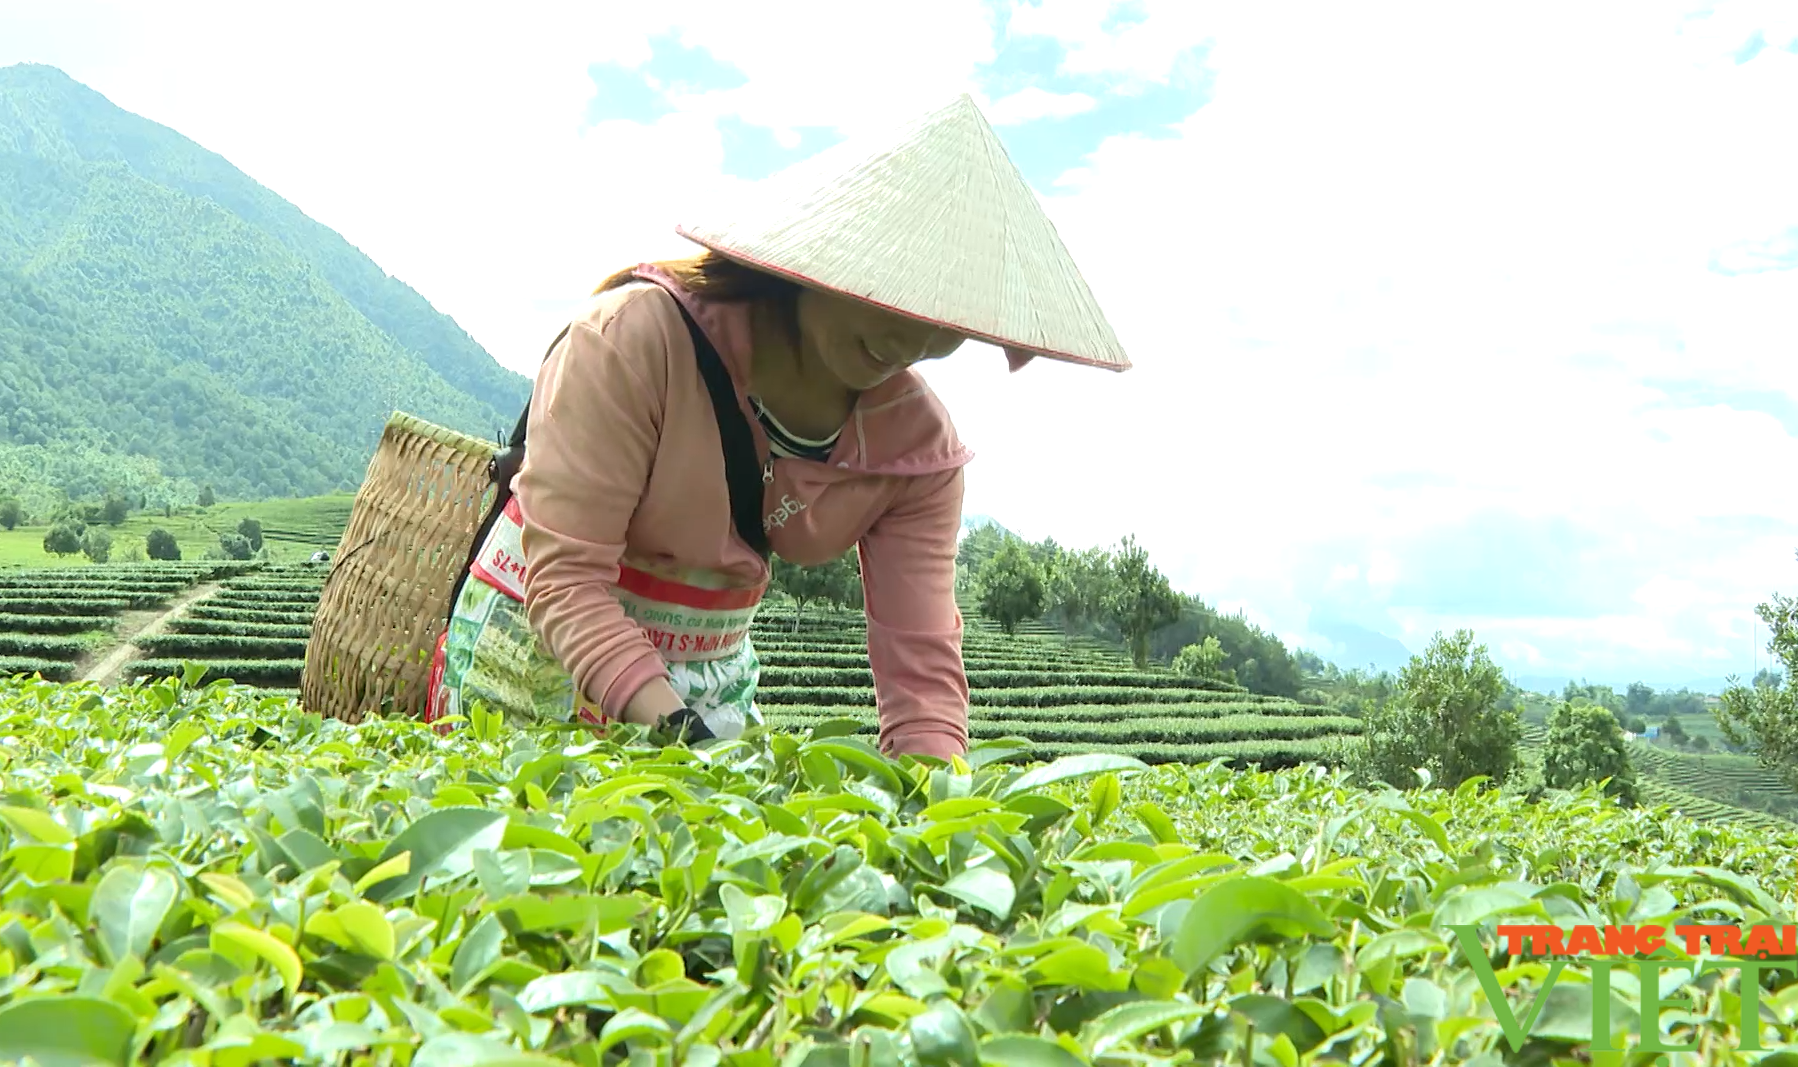 Nông dân huyện Tam Đường ở Lai Châu tăng thu nhập từ trồng chanh leo, sản xuất hàng hóa - Ảnh 4.